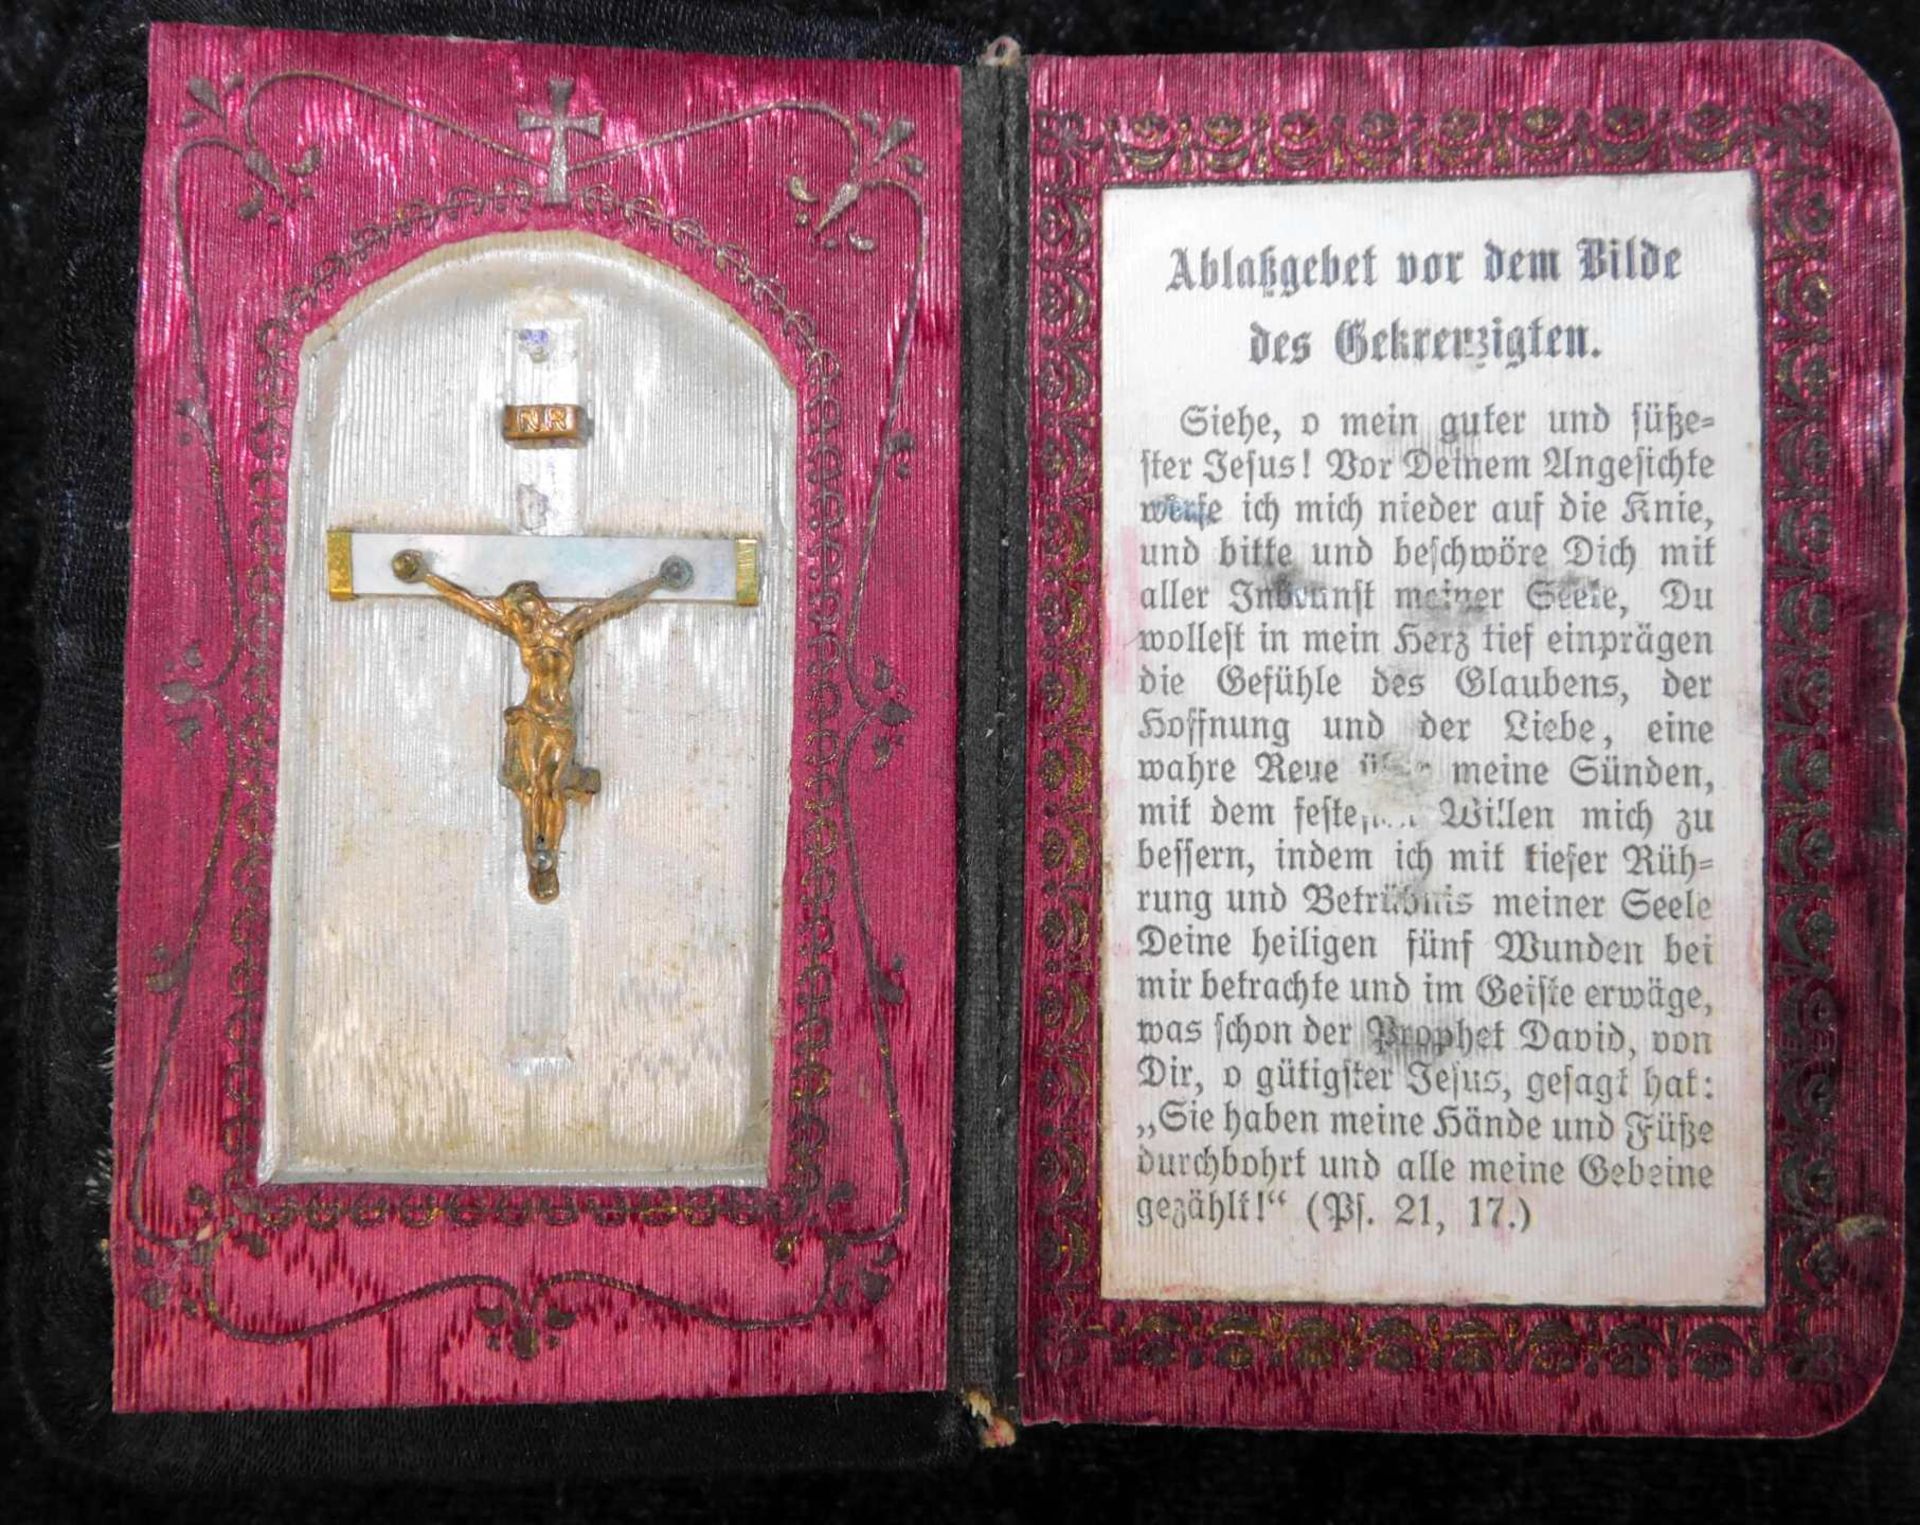 3 Gebetbücher, Nachf. Christi, 1912, Gebet u. gesangbuch Erzbistum Köln, 1935, Kath. Gebetbuch - Bild 6 aus 7